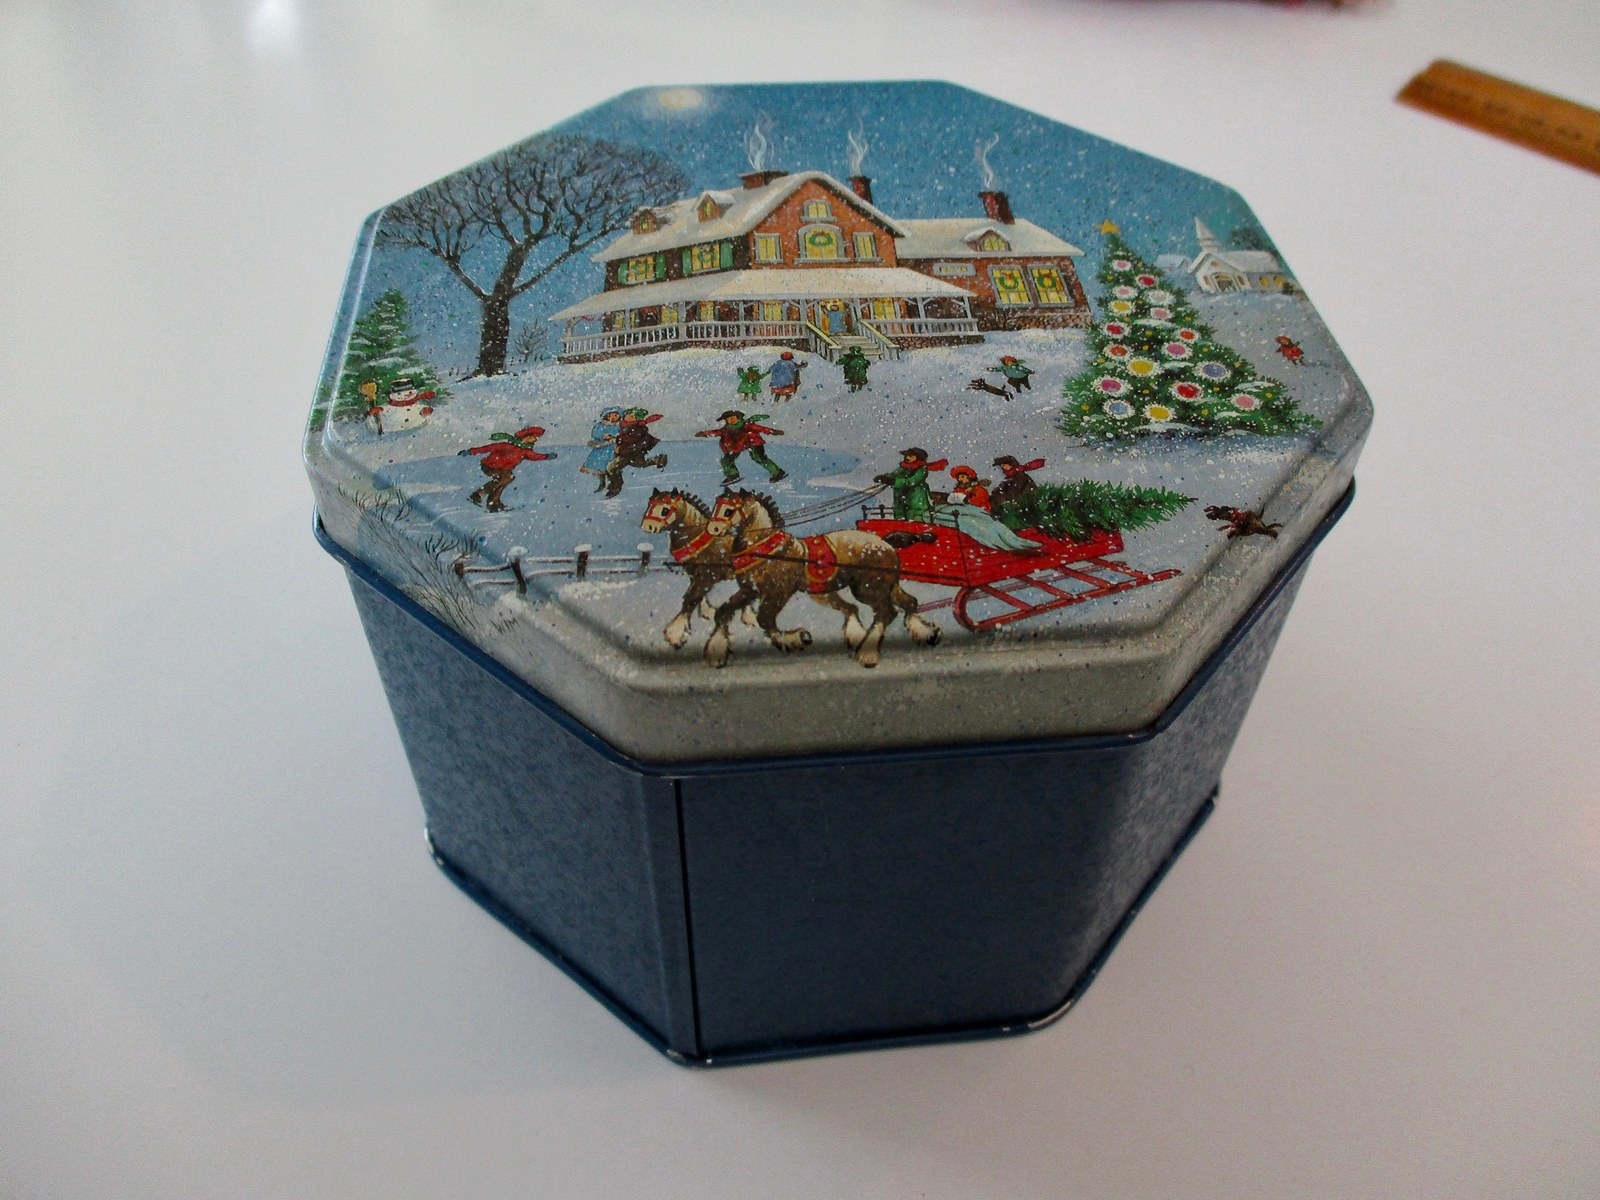 A Christmas tin